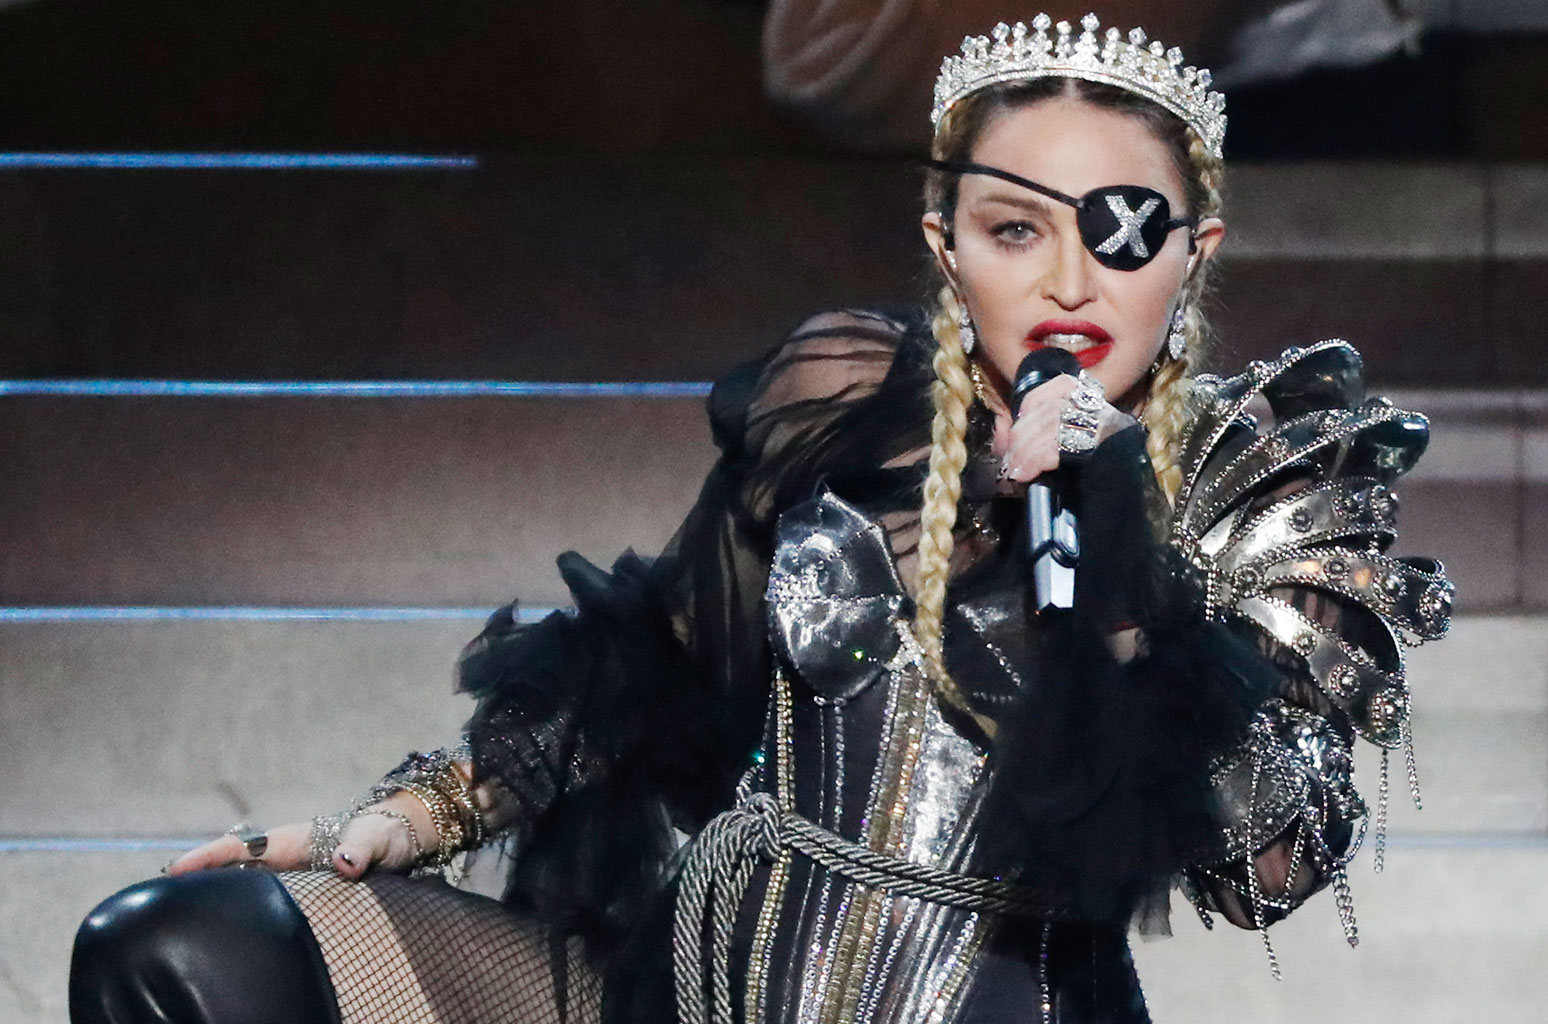 “Даже не постаралась”: в сети осудили выступление Мадонны, которая так и не попала в ноты 18